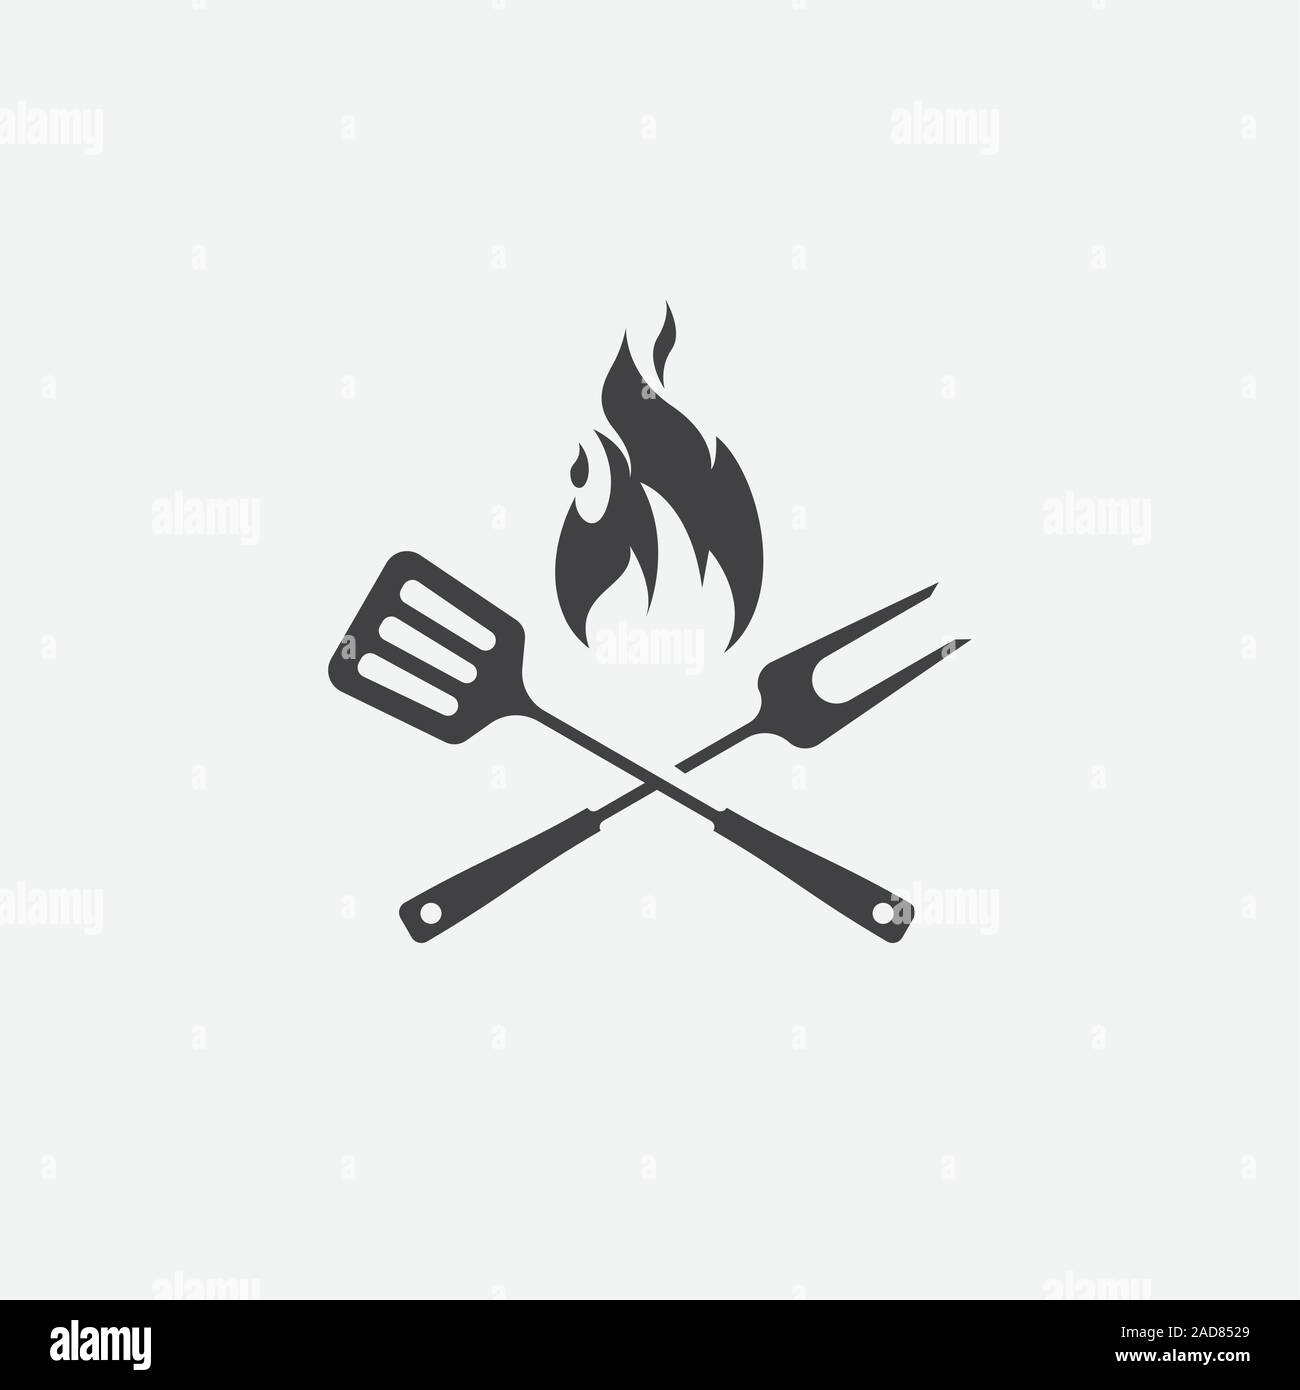 BBQ mit Flammensymbol, Grill zeichen Fleisch und Lebensmittel Symbol, Gabel  und Spachtel, Barbeque Grill Symbol Symbol Vektor-illustration Zeichen  Stock-Vektorgrafik - Alamy